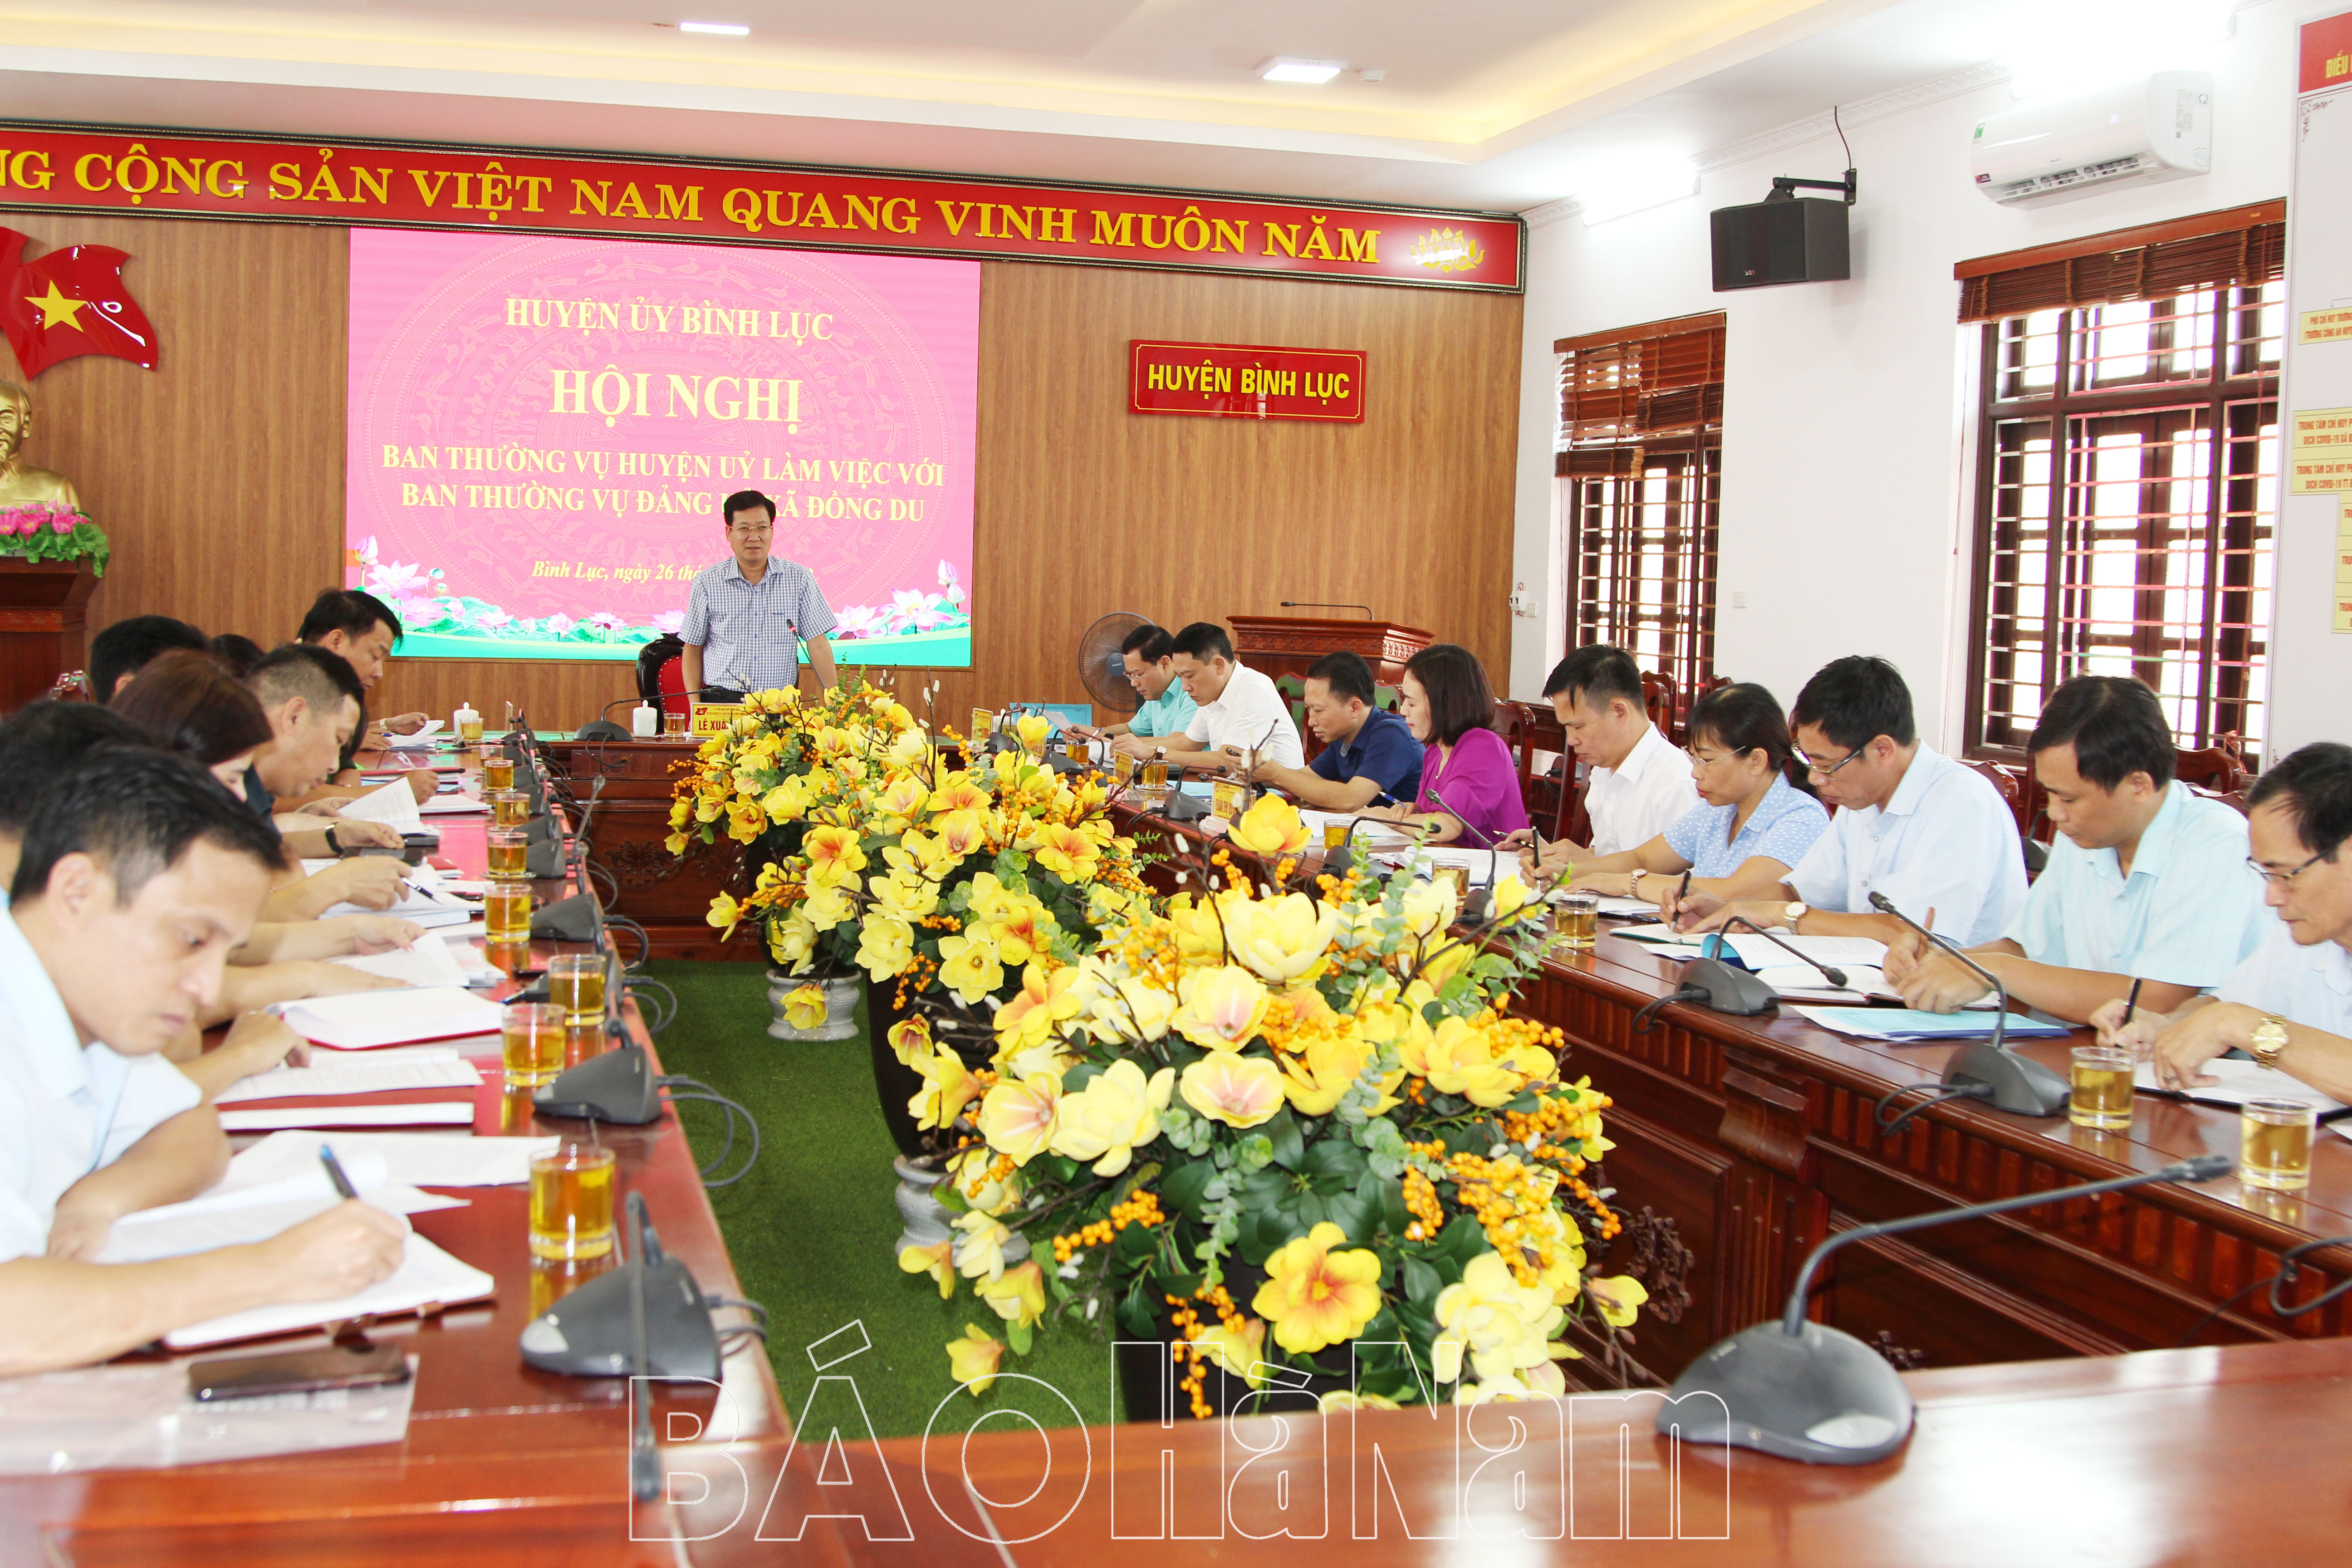 BTV Huyện ủy Bình Lục làm việc với BTV Đảng ủy xã Đồng Du về việc thực hiện nghị quyết đại hội Đảng các cấp